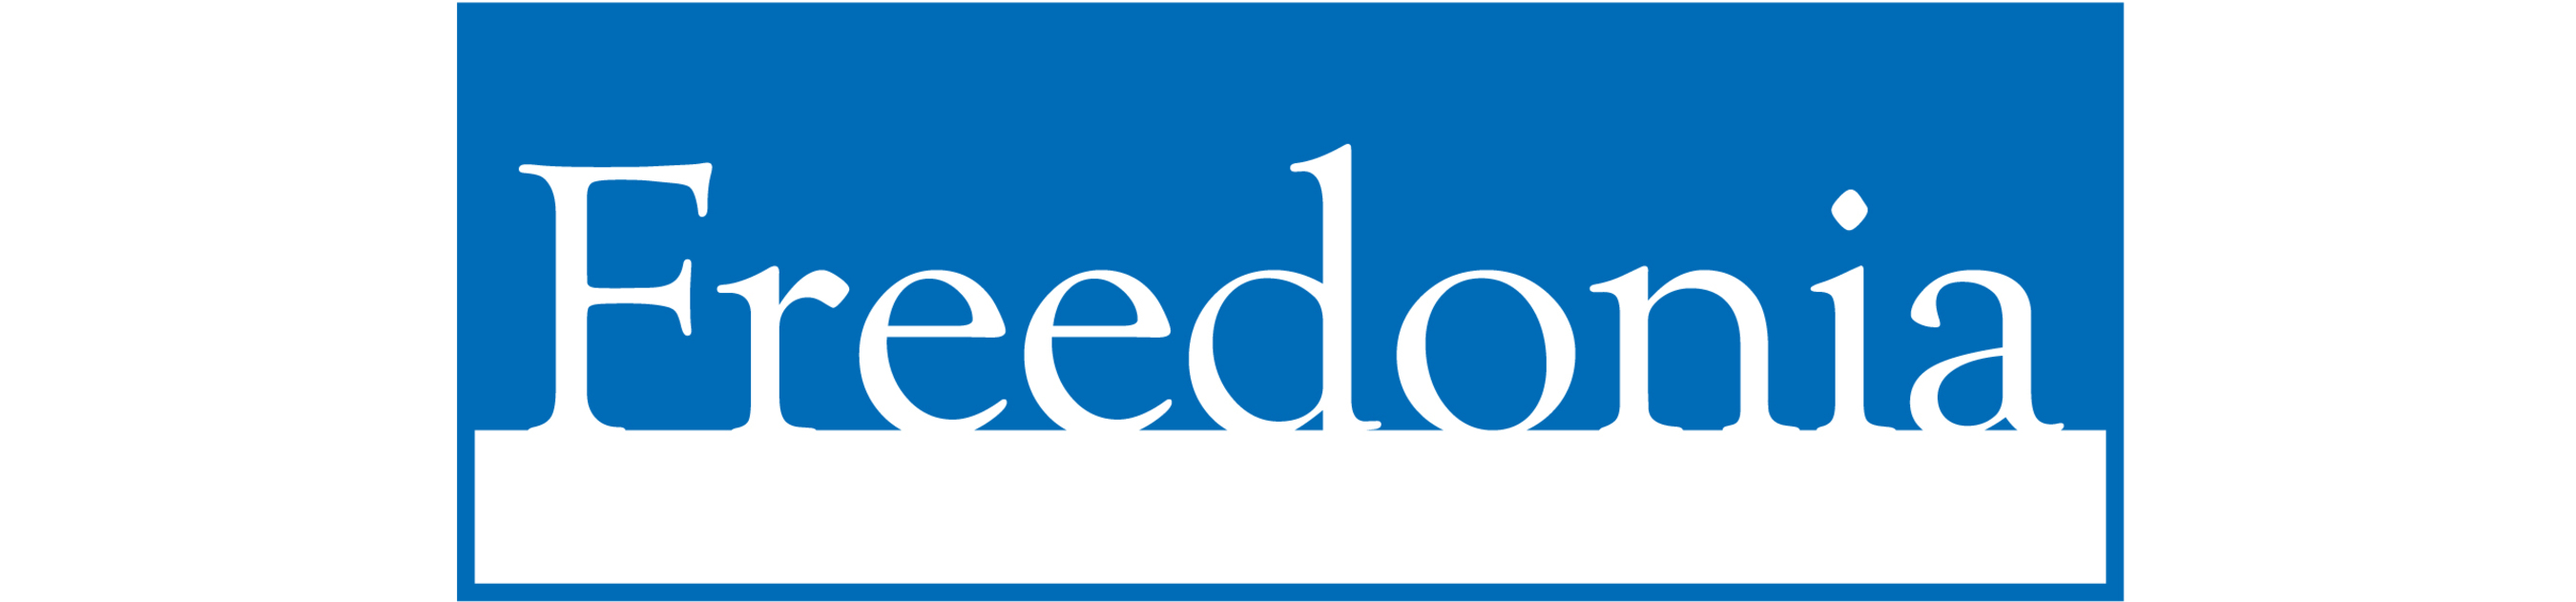 Freedonia Group logo (PRNewsFoto/The Freedonia Group)